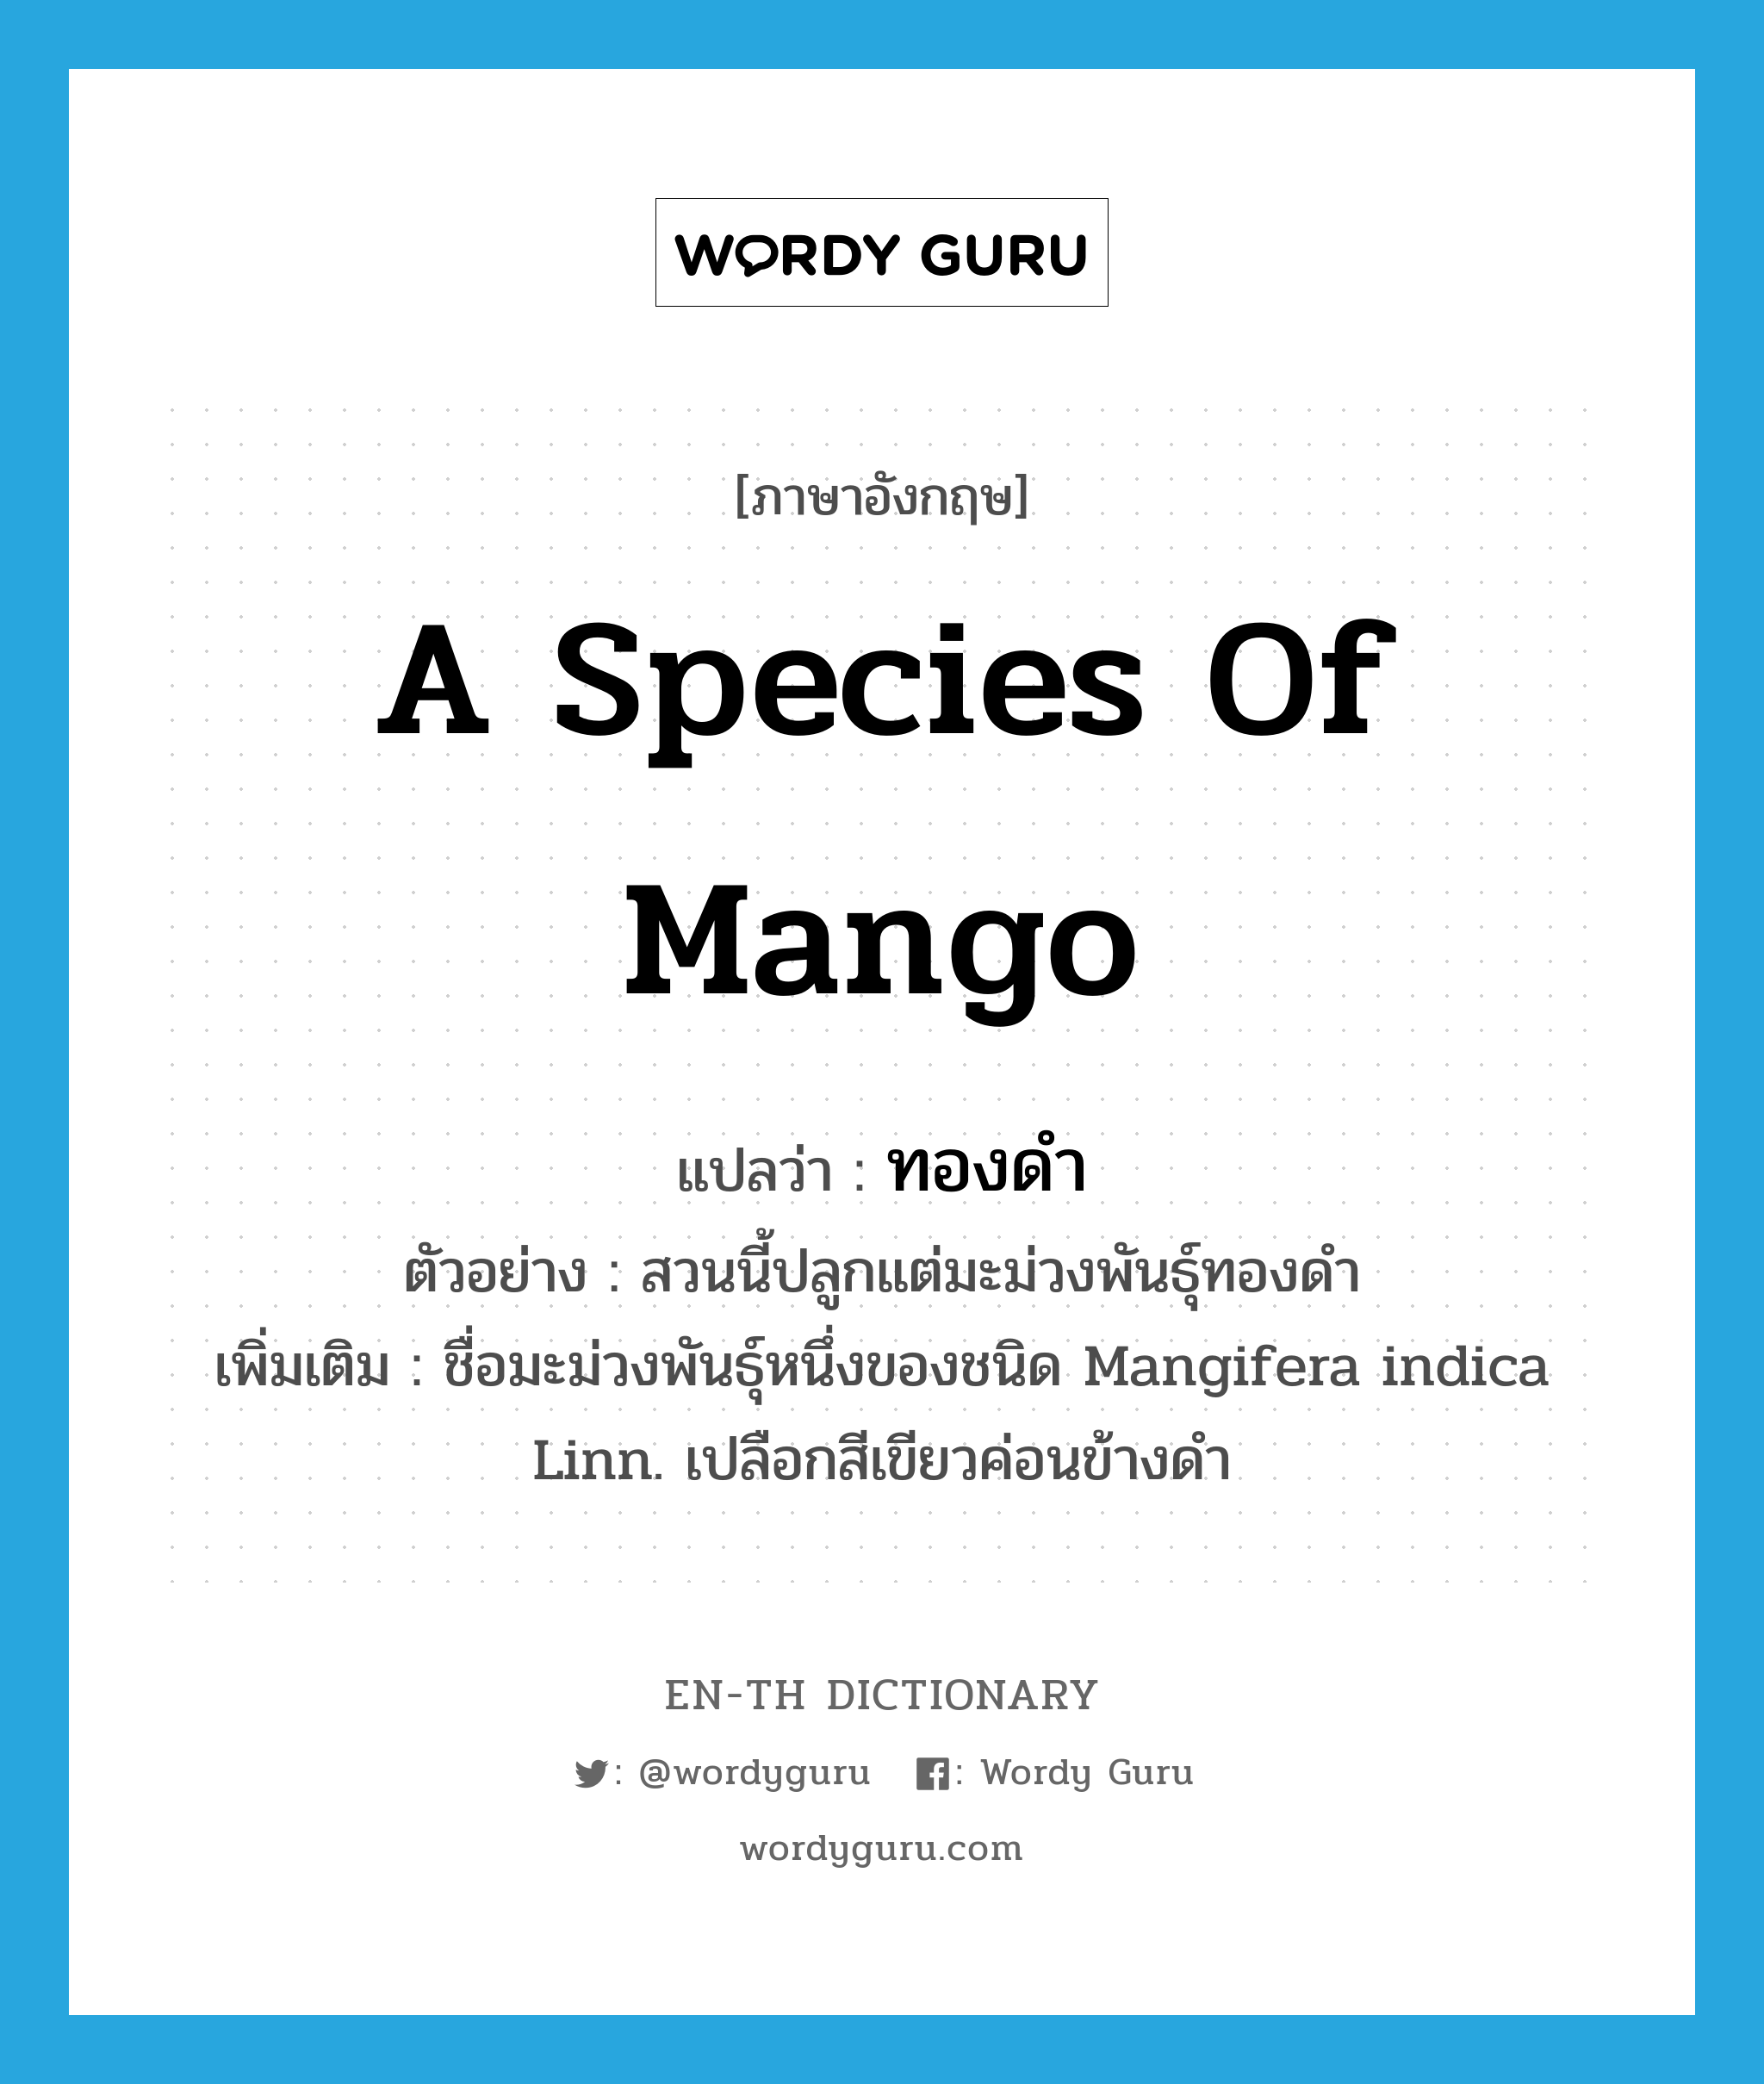 a species of mango แปลว่า?, คำศัพท์ภาษาอังกฤษ a species of mango แปลว่า ทองดำ ประเภท N ตัวอย่าง สวนนี้ปลูกแต่มะม่วงพันธุ์ทองดำ เพิ่มเติม ชื่อมะม่วงพันธุ์หนึ่งของชนิด Mangifera indica Linn. เปลือกสีเขียวค่อนข้างดำ หมวด N